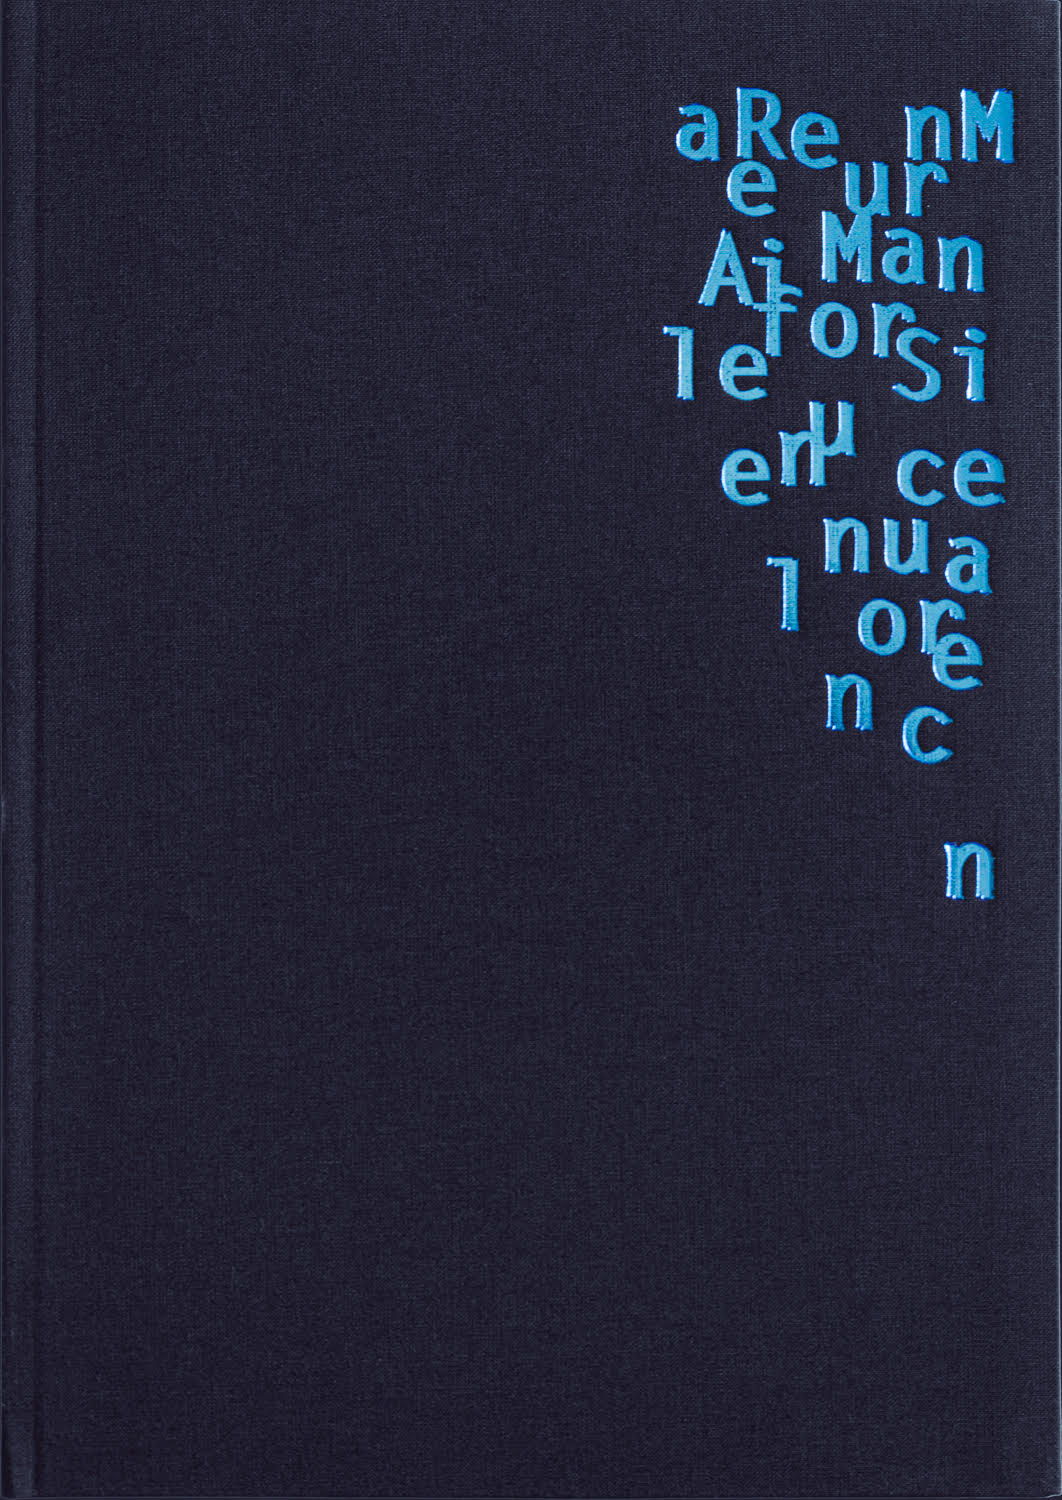 Rene Maurin / A Manual for Silence